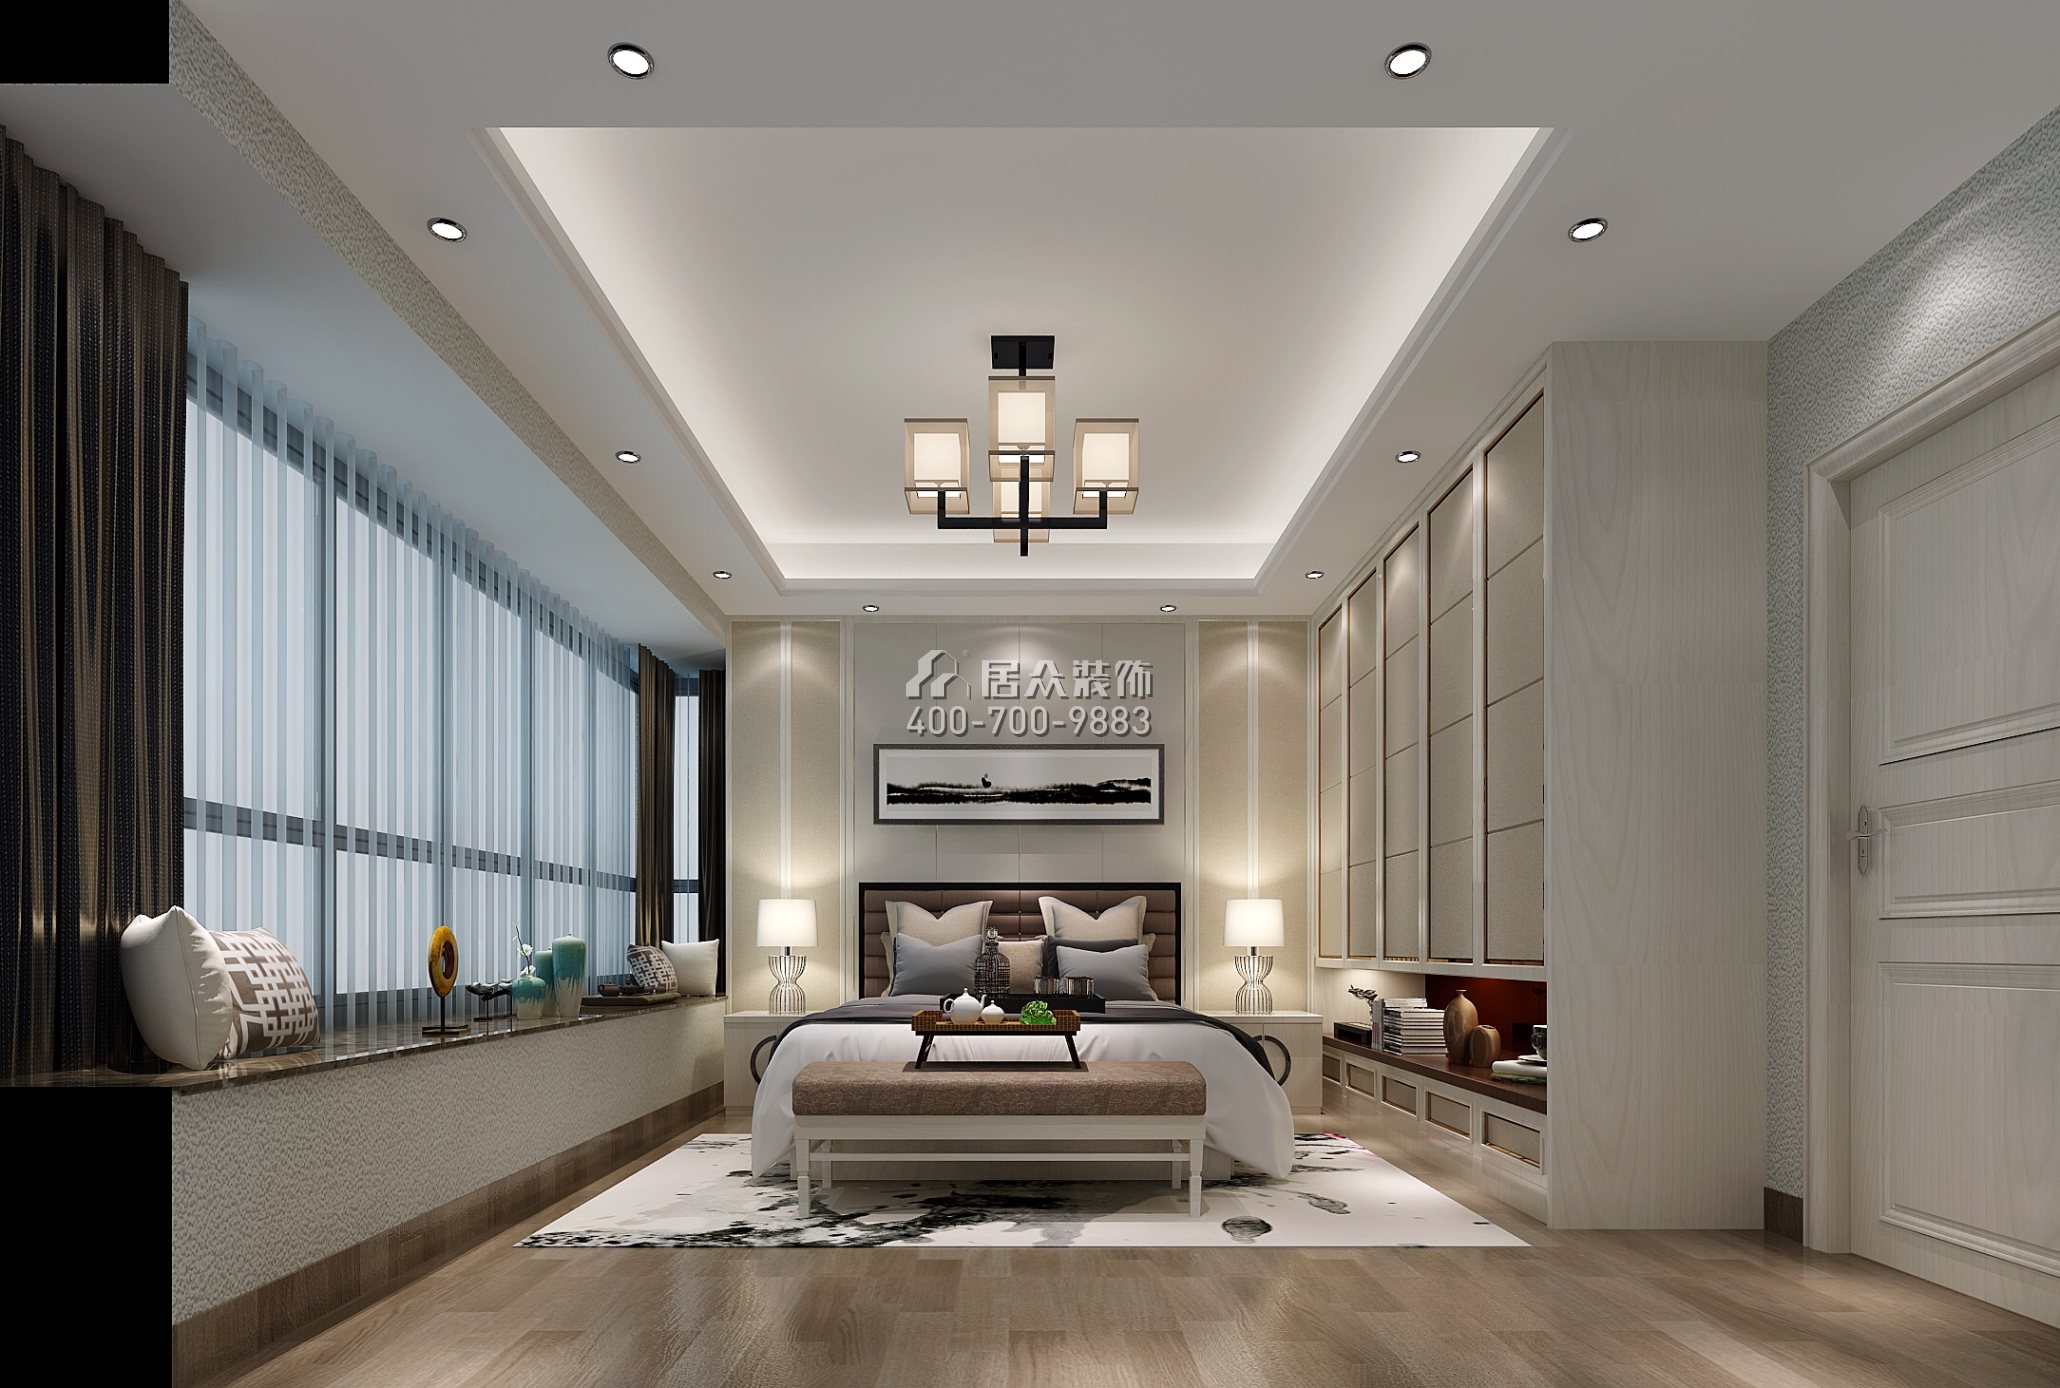 嘉都汇120平方米新古典风格平层户型卧室开元官网效果图